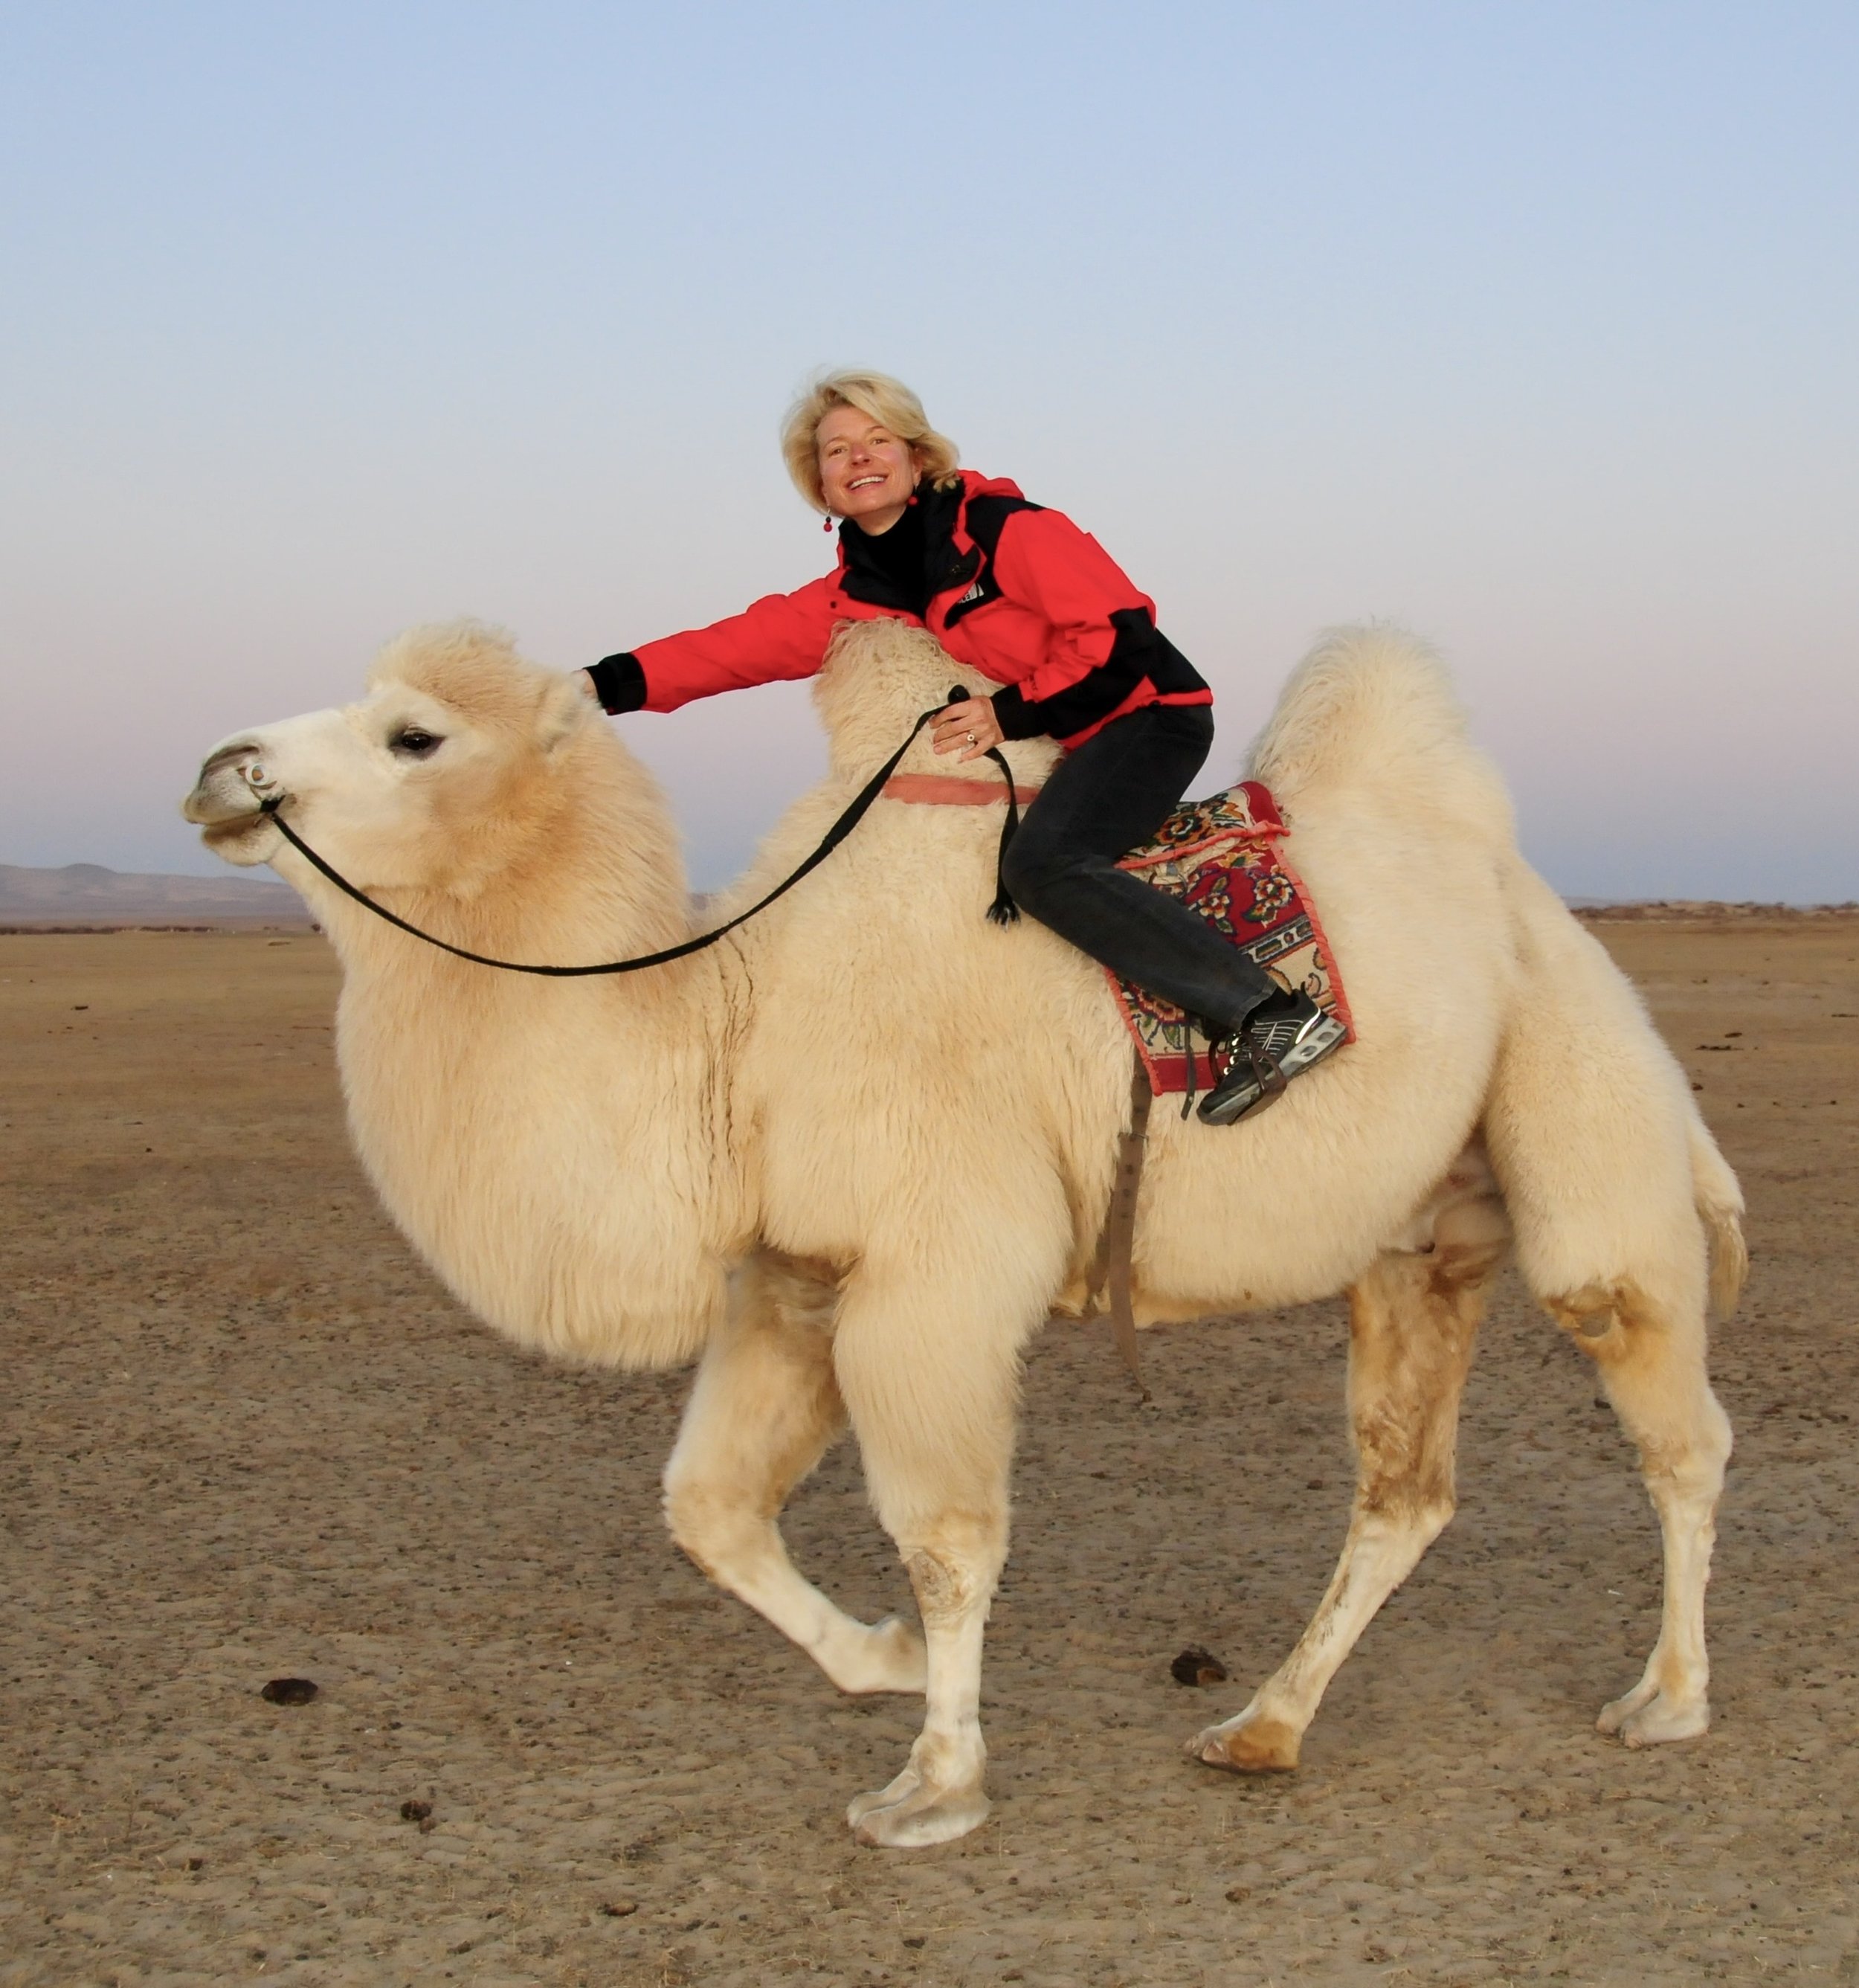 2009 10 13 152 Mongolia Ulanbaatar to Karakhorum trip camel nomad karin camel 2.jpg